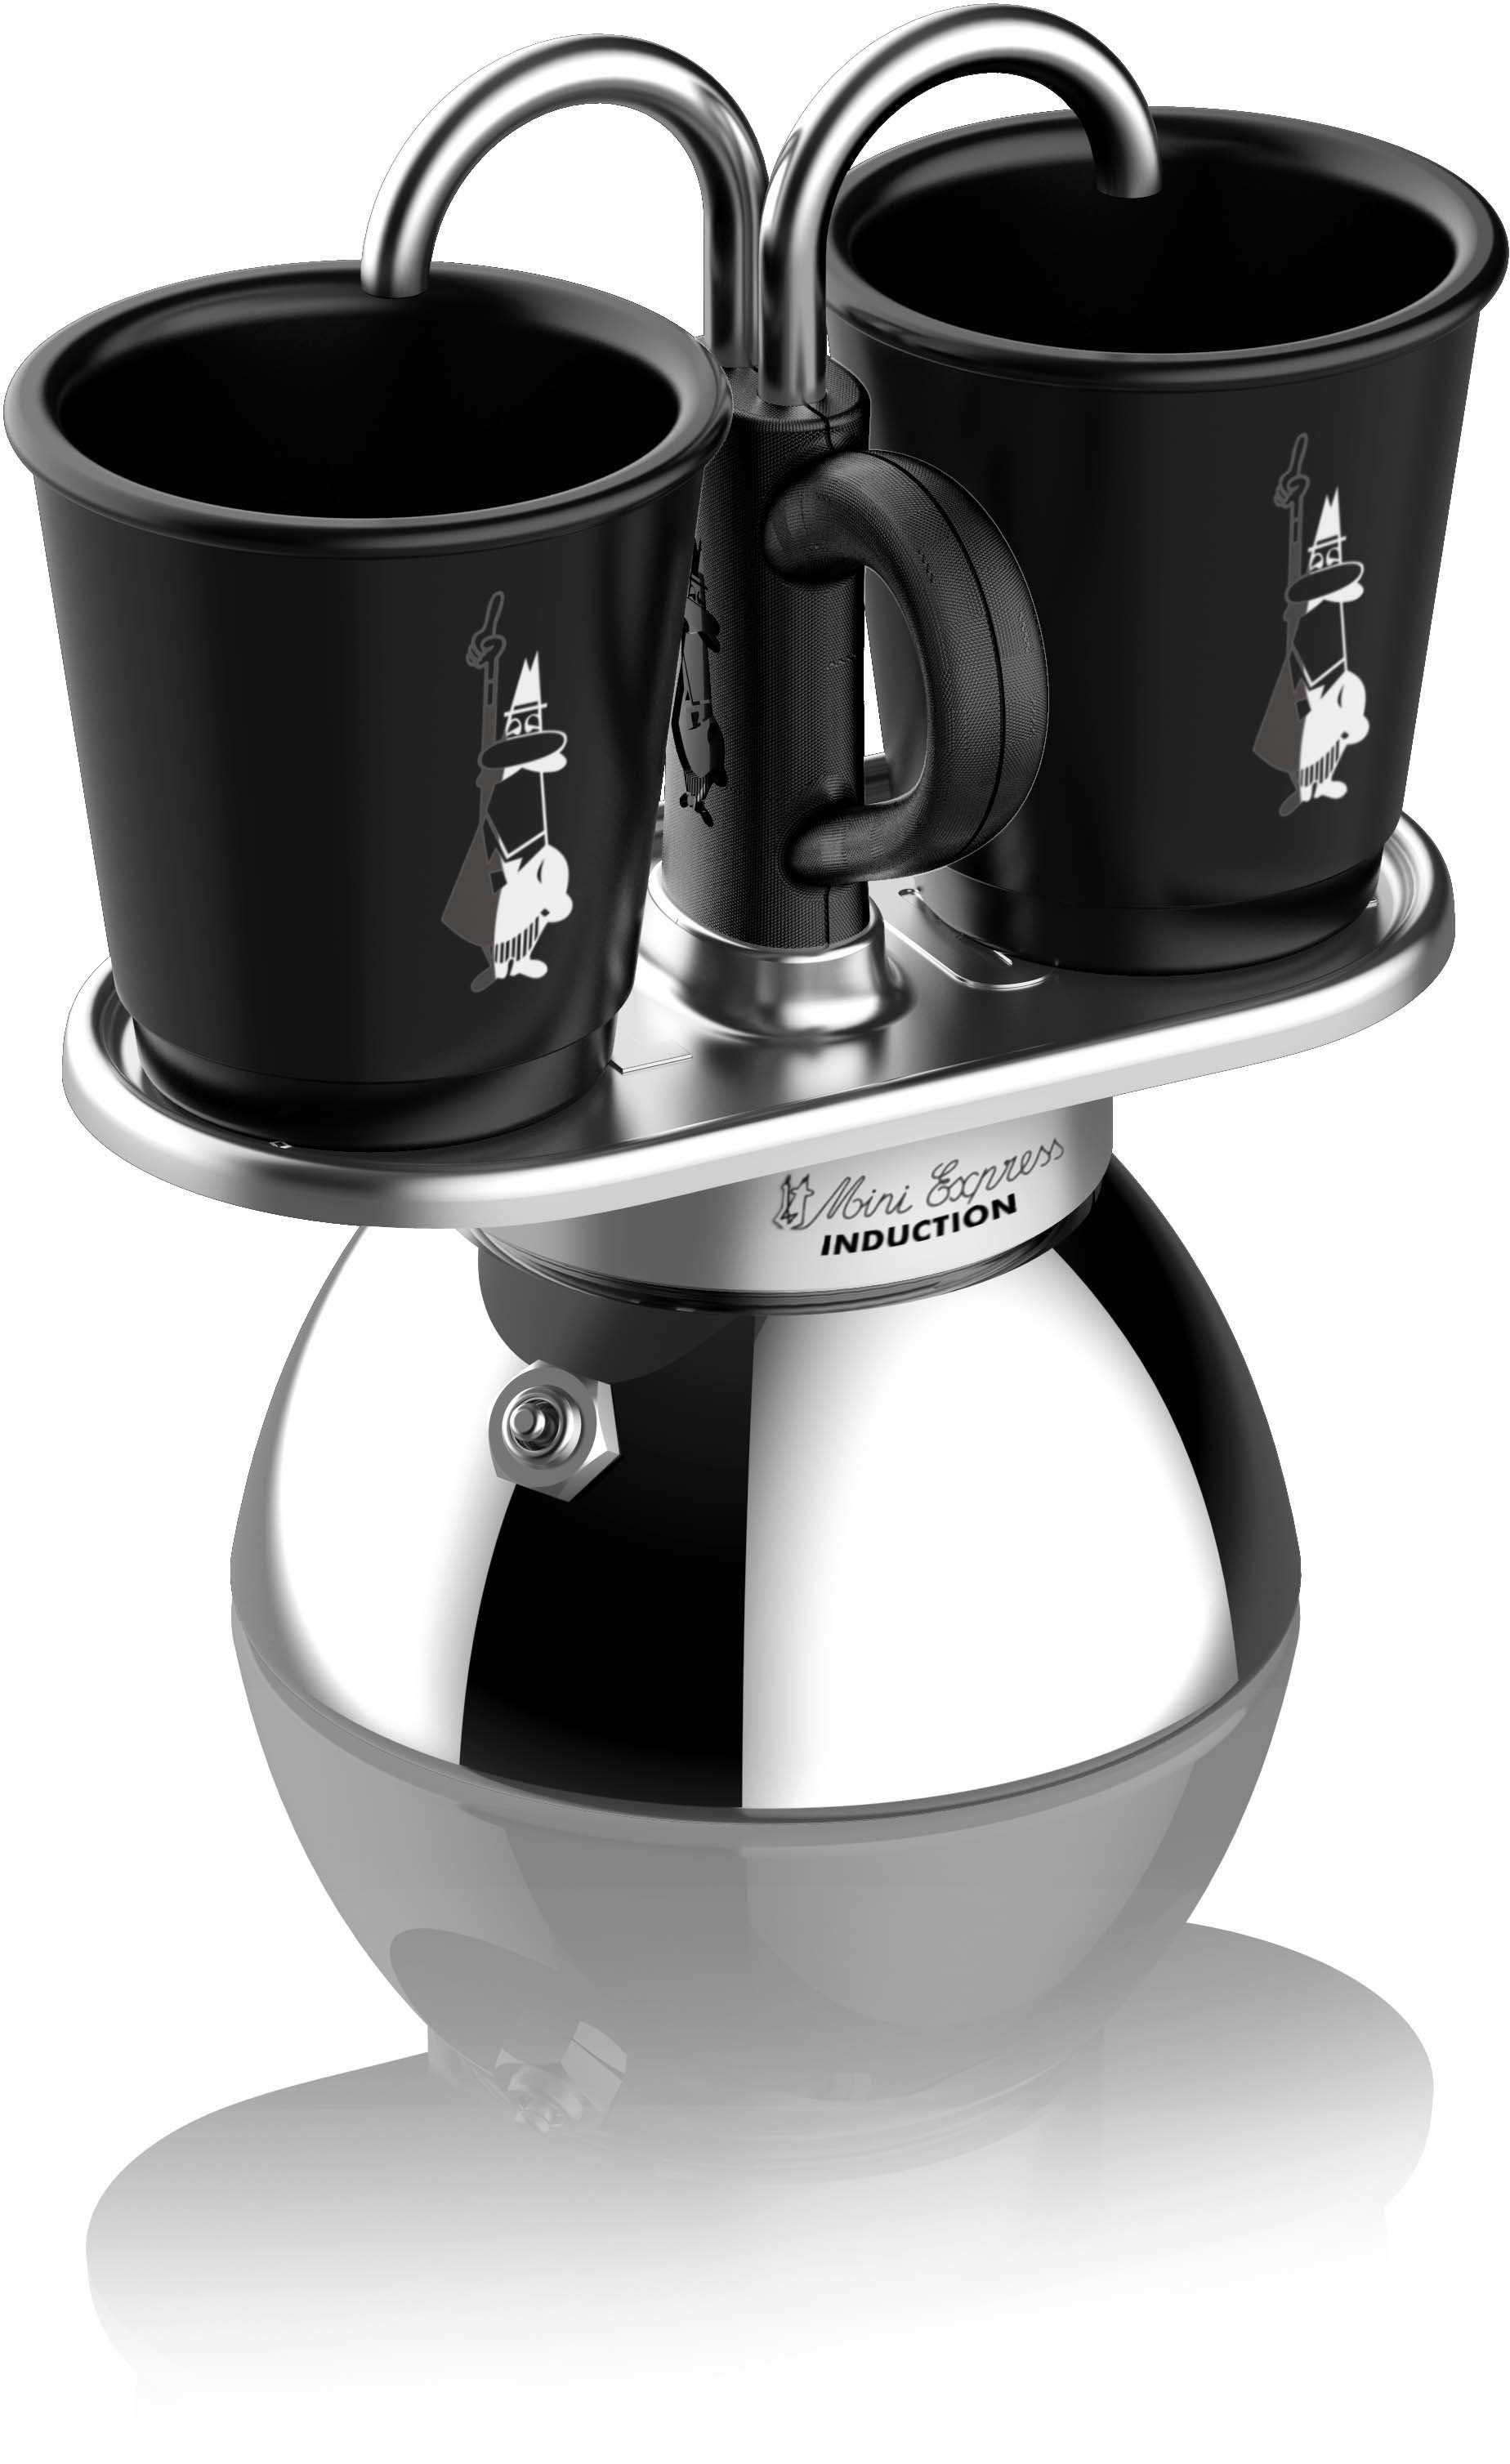 BIALETTI Espressokocher Mini Induktion, zwei Espressi gleichzeitig zubereiten, 90 ml, Zwei-Schicht-Edelstahl